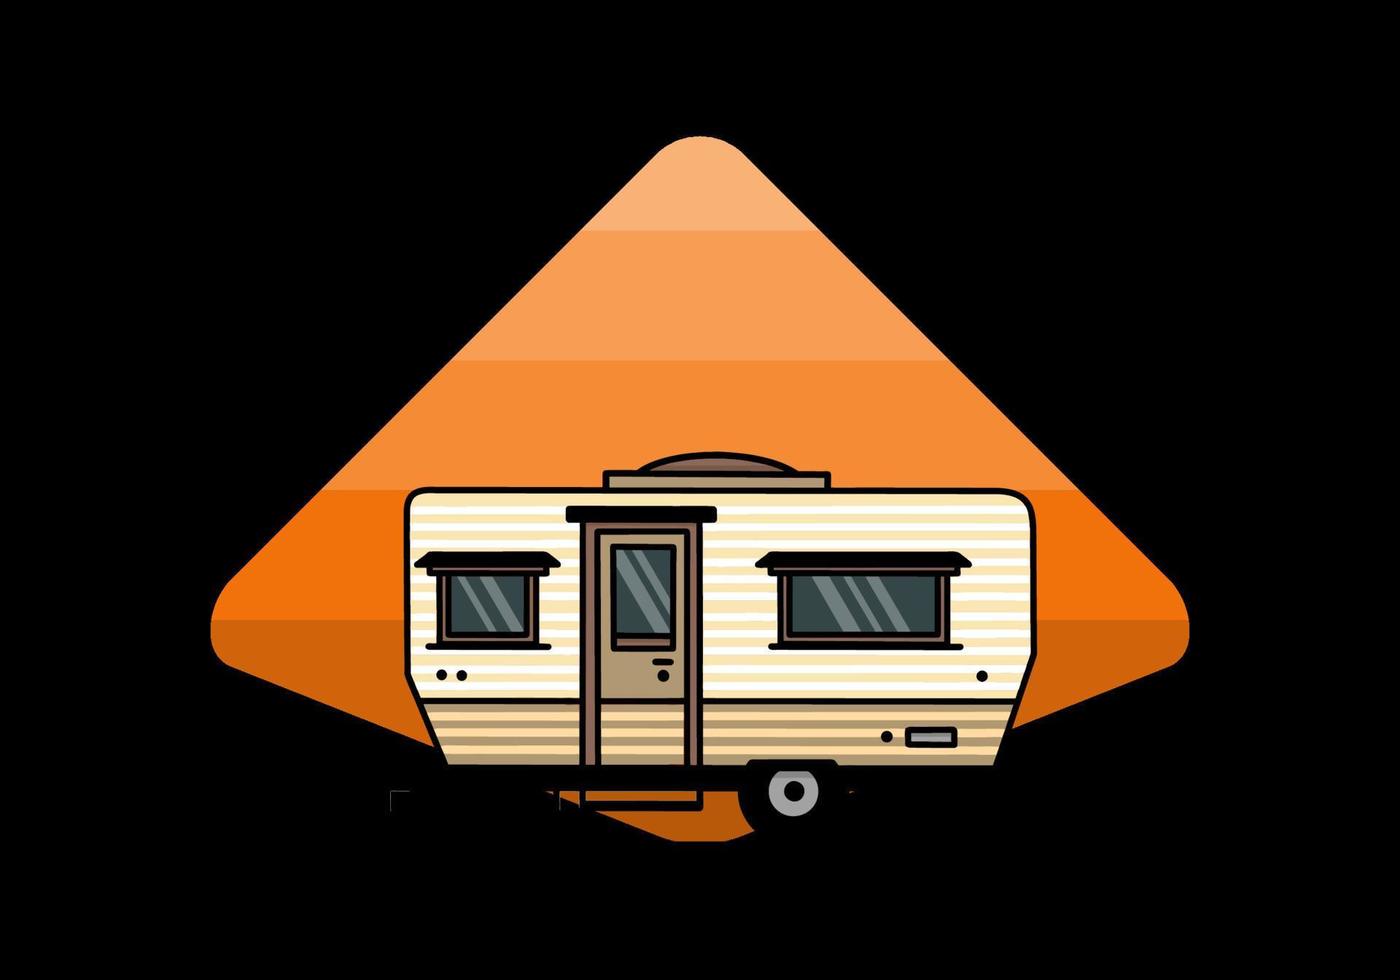 conception d'insigne d'illustration de camping-car en forme de larme vecteur